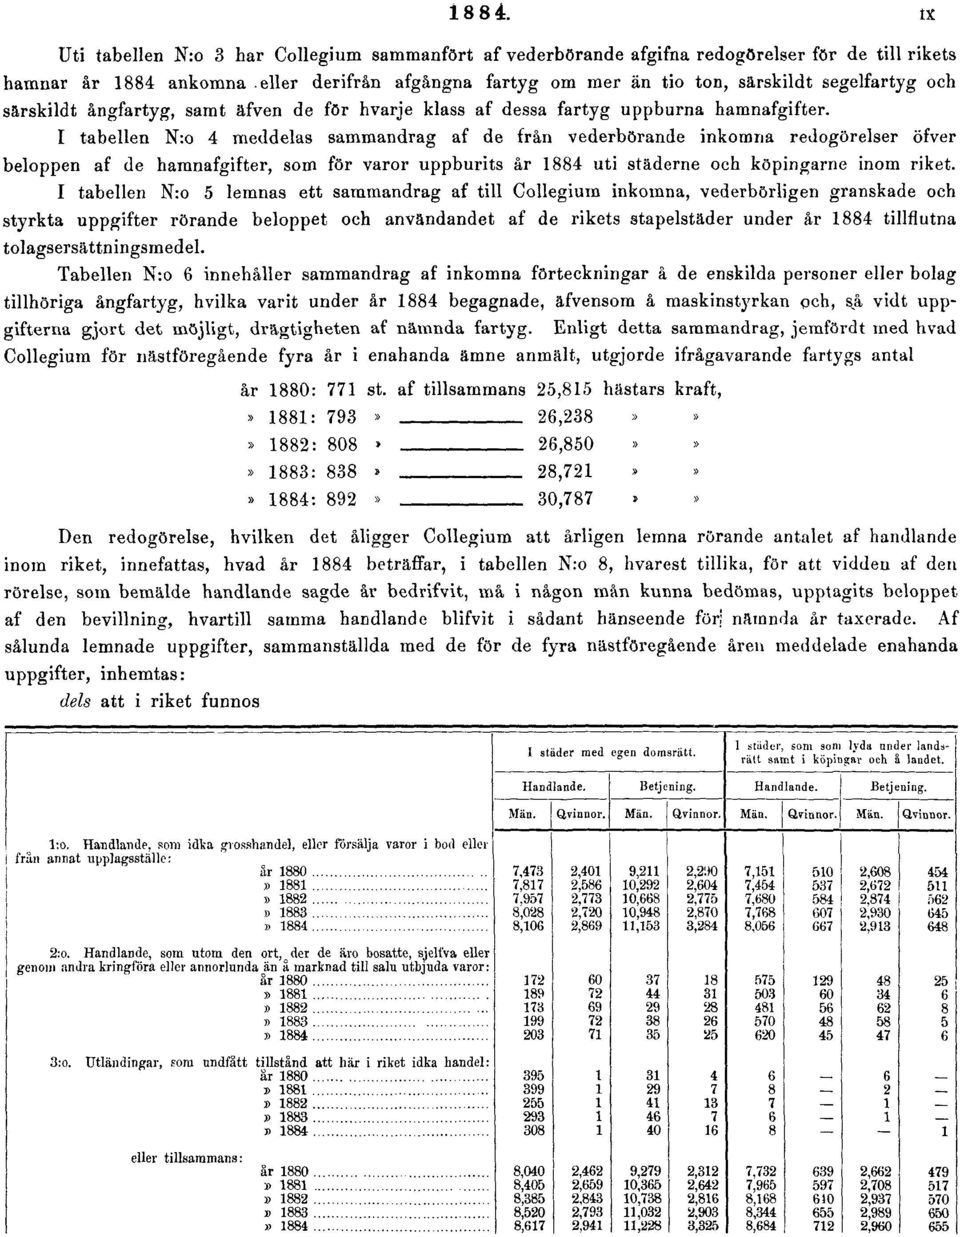 I tabellen N:o 4 meddelas sammandrag af de från vederbörande inkomna redogörelser öfver beloppen af de hamnafgifter, som för varor uppburits år 1884 uti städerne och köpingarne inom riket.